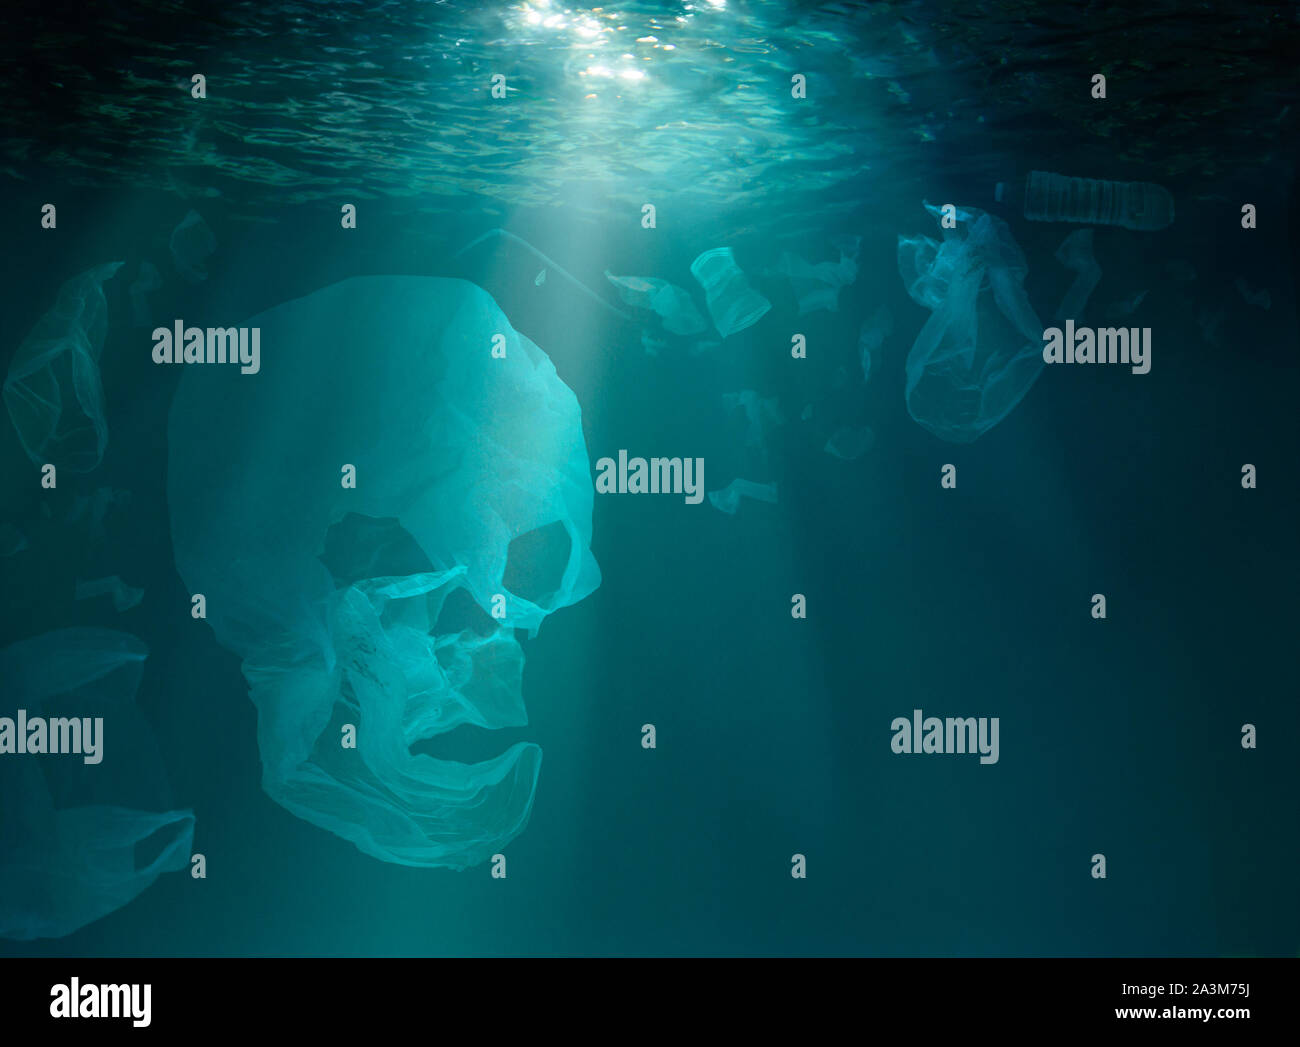 Crâne fabriqué à partir de déchets plastiques underwater Banque D'Images